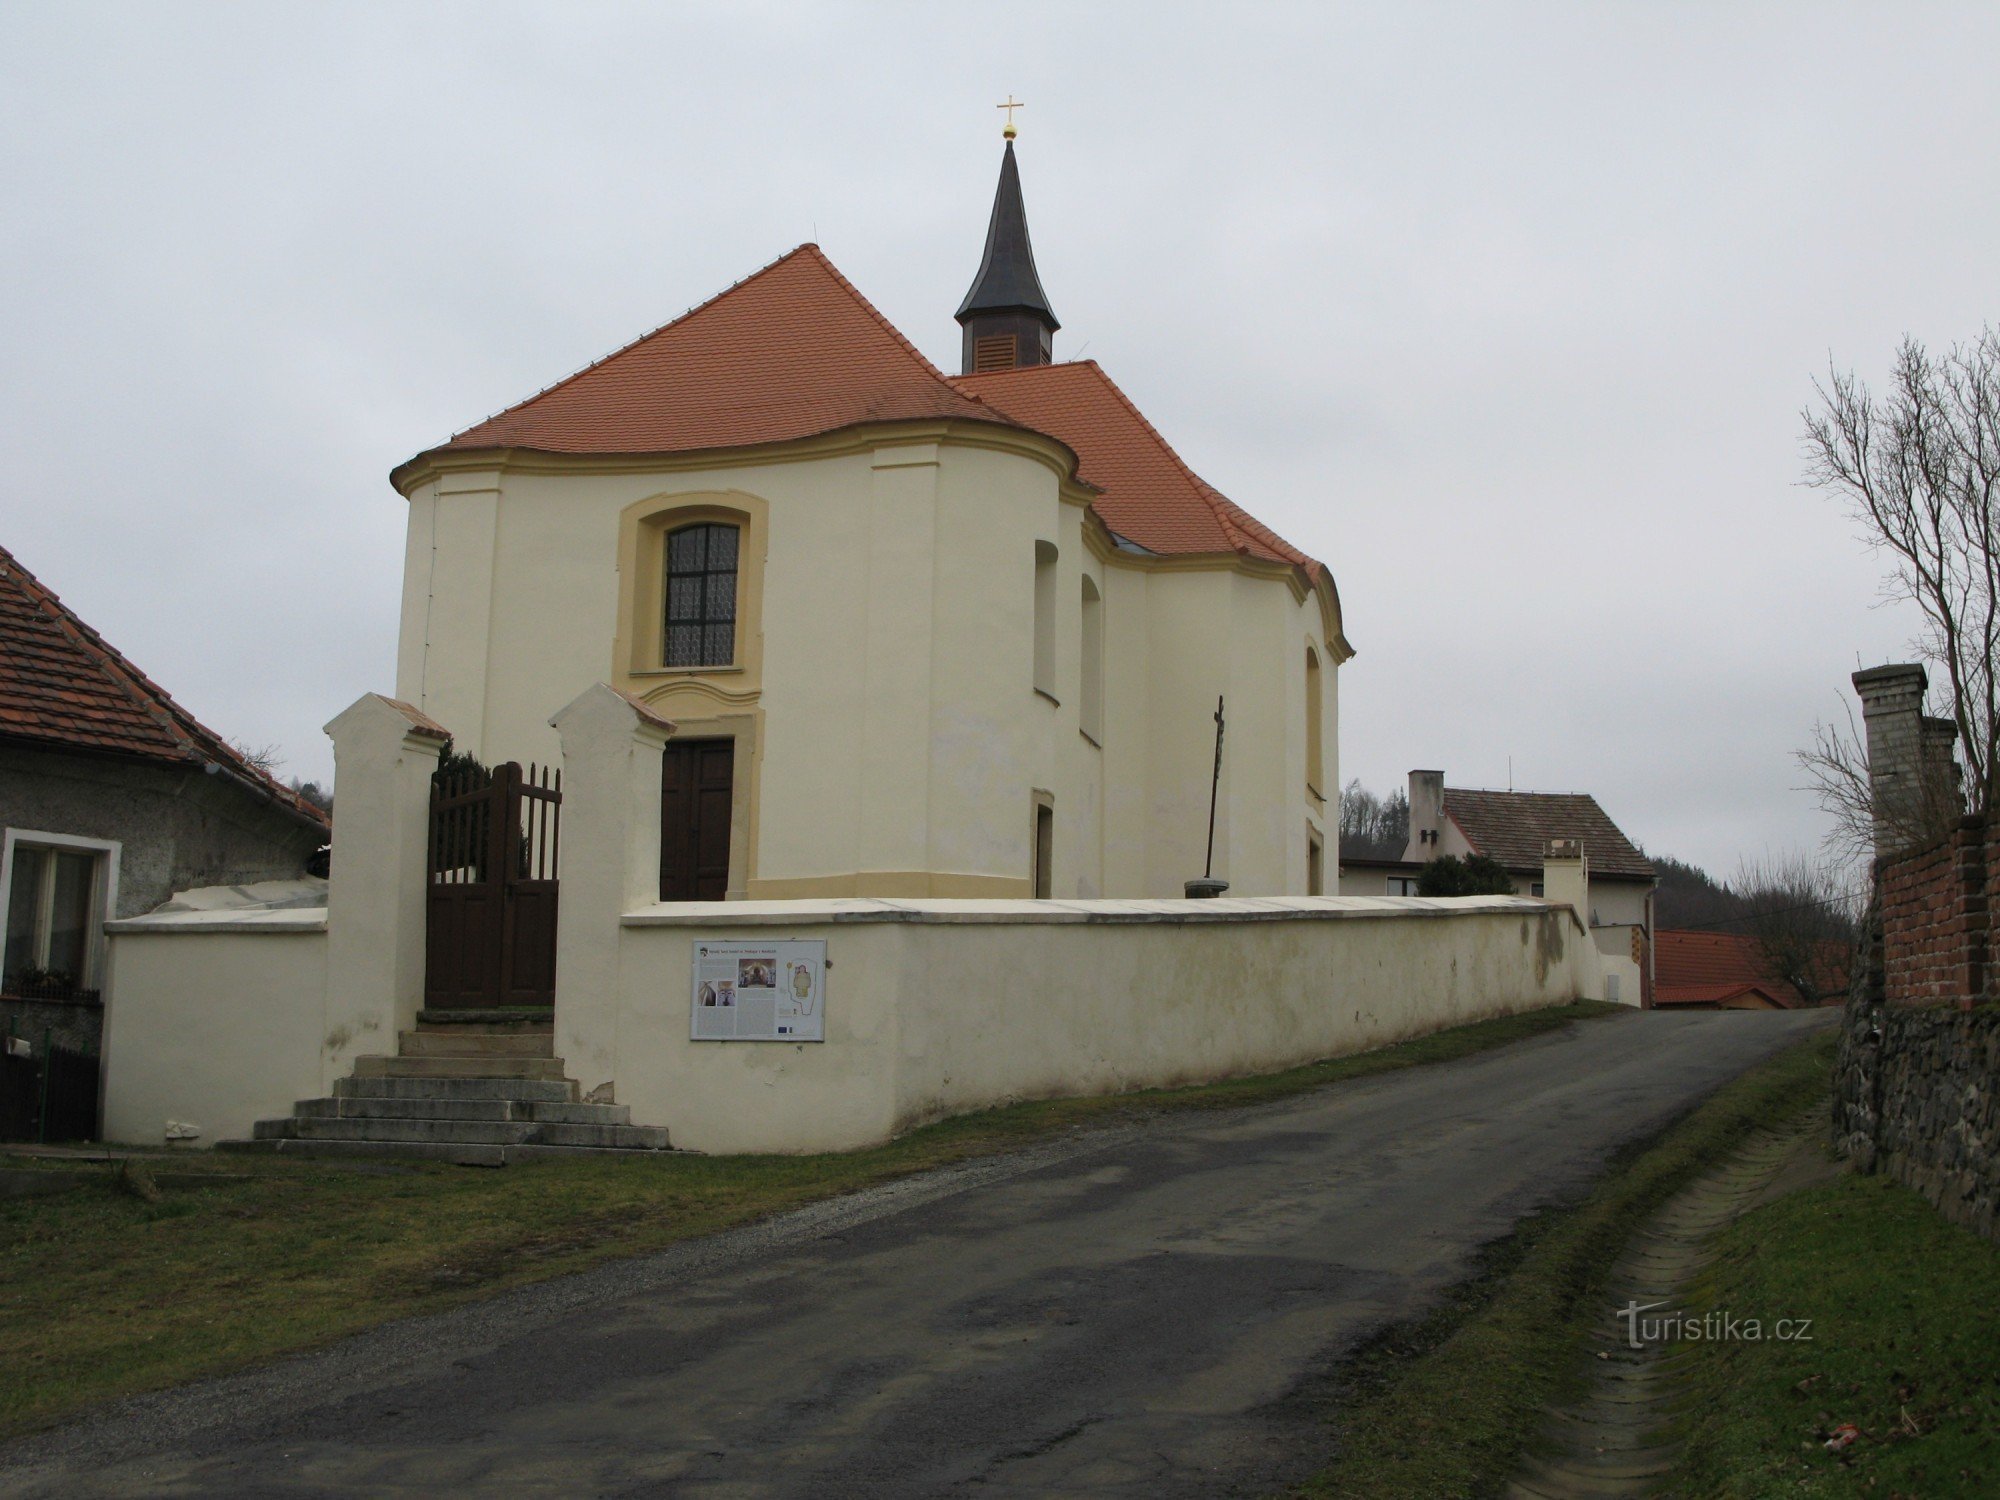 Nezdice - 圣教堂挖出